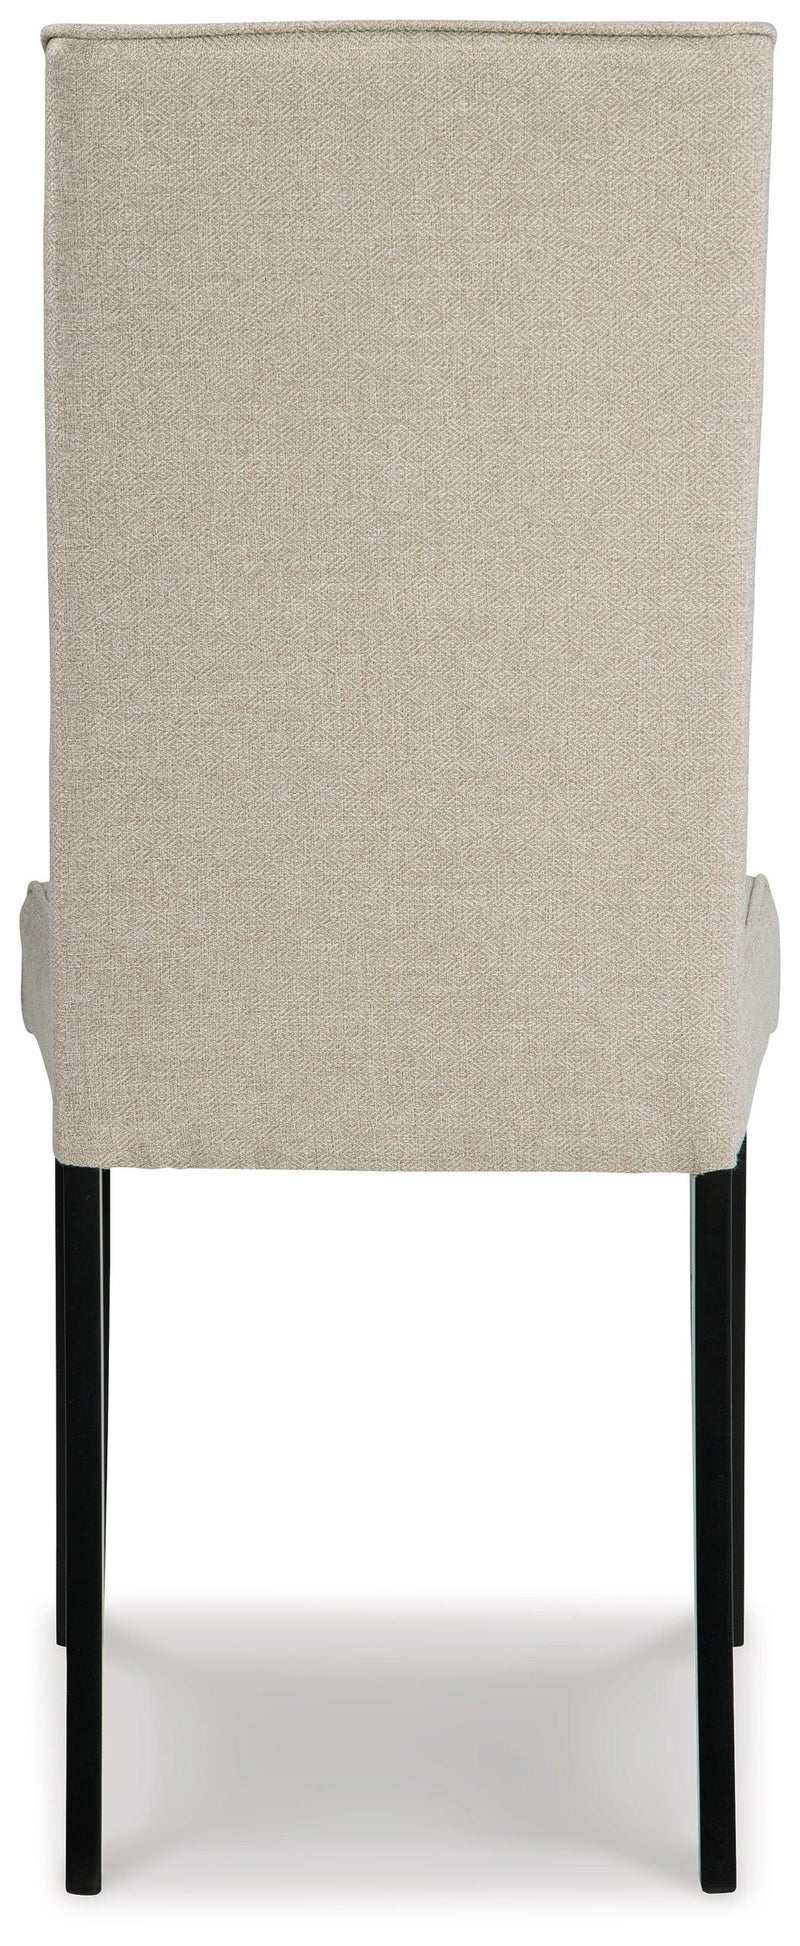 Kimonte Dark Brown/beige 2-Piece Dining Room Chair - Ella Furniture